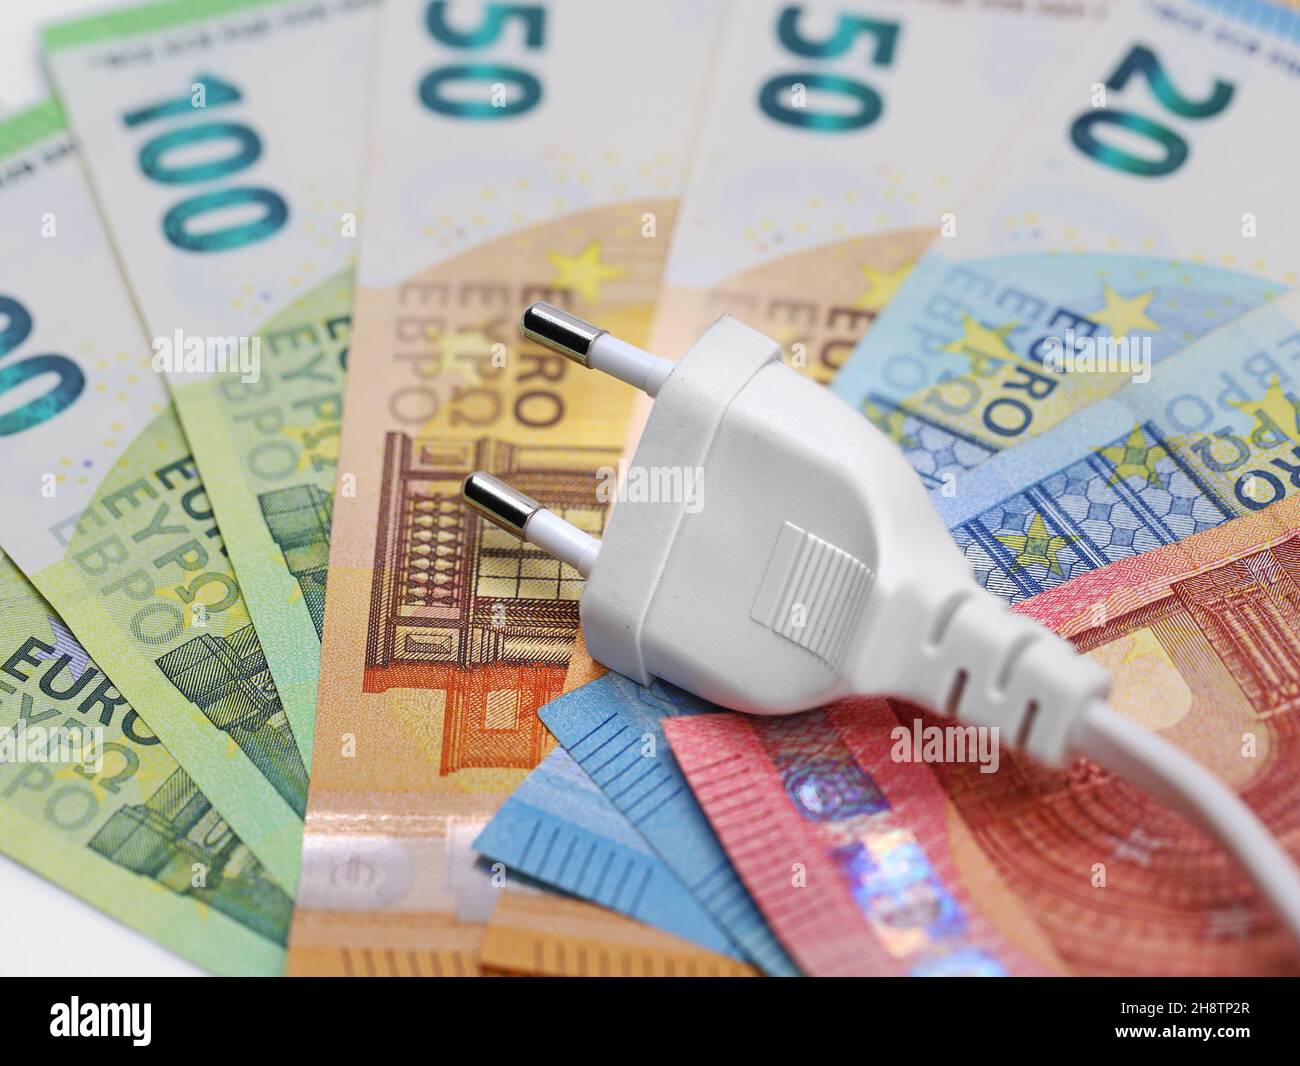 fiche blanche sur les billets en euros, concept d'augmentation du prix de l'électricité Banque D'Images